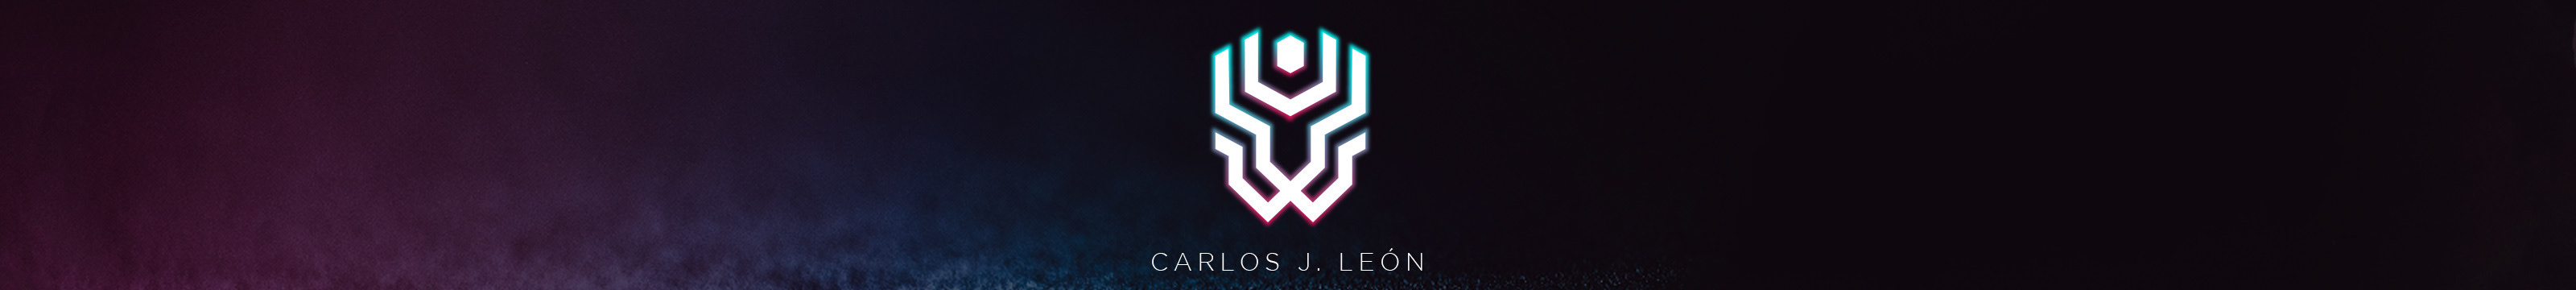 Баннер профиля Carlos J. León